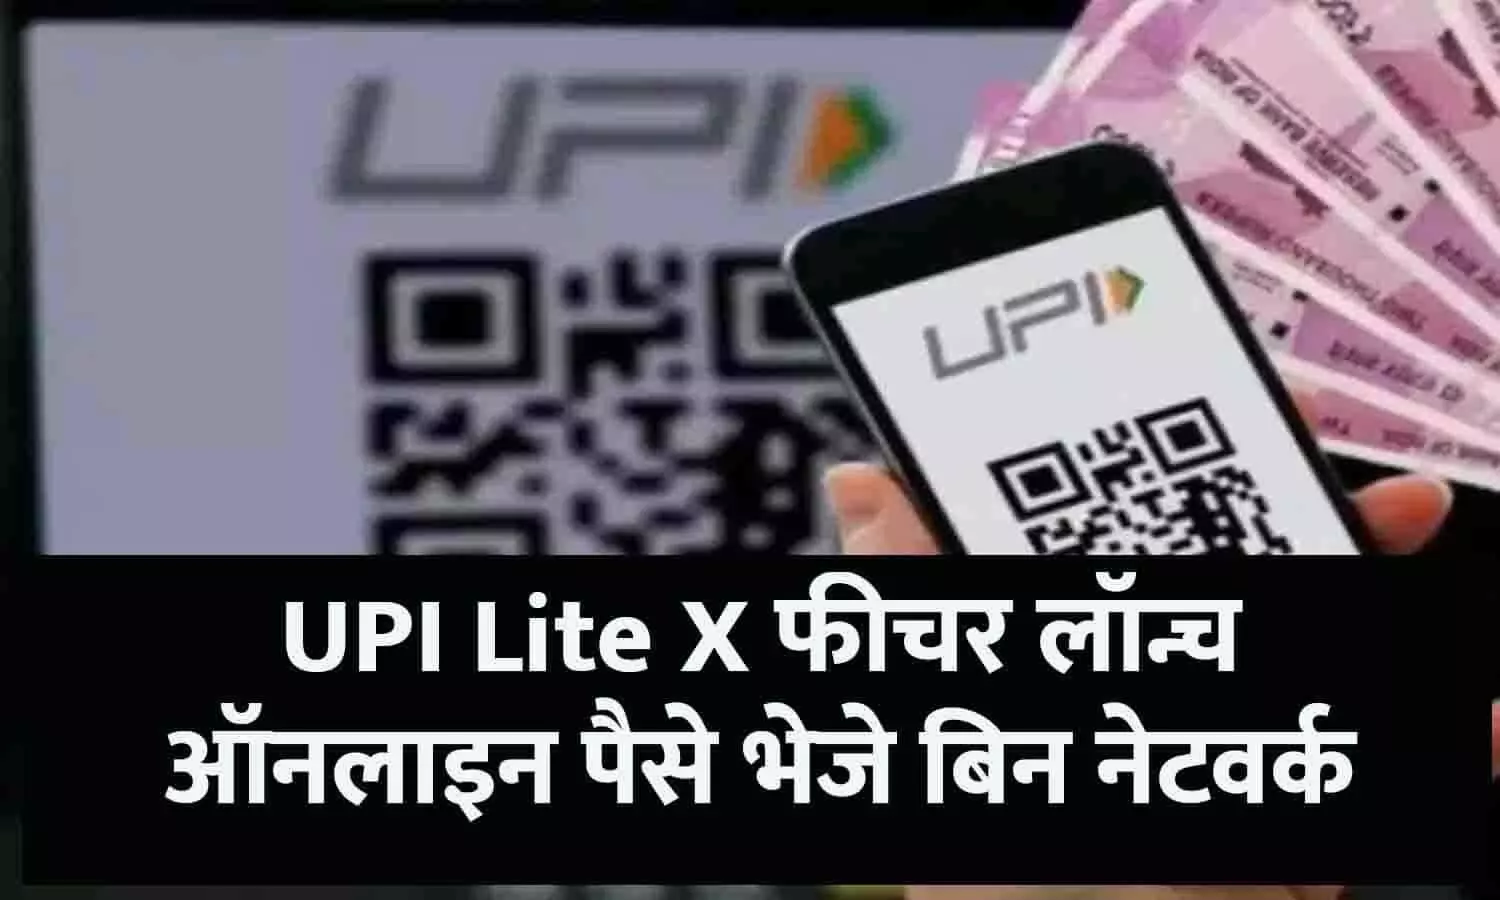 UPI Lite X Full Details